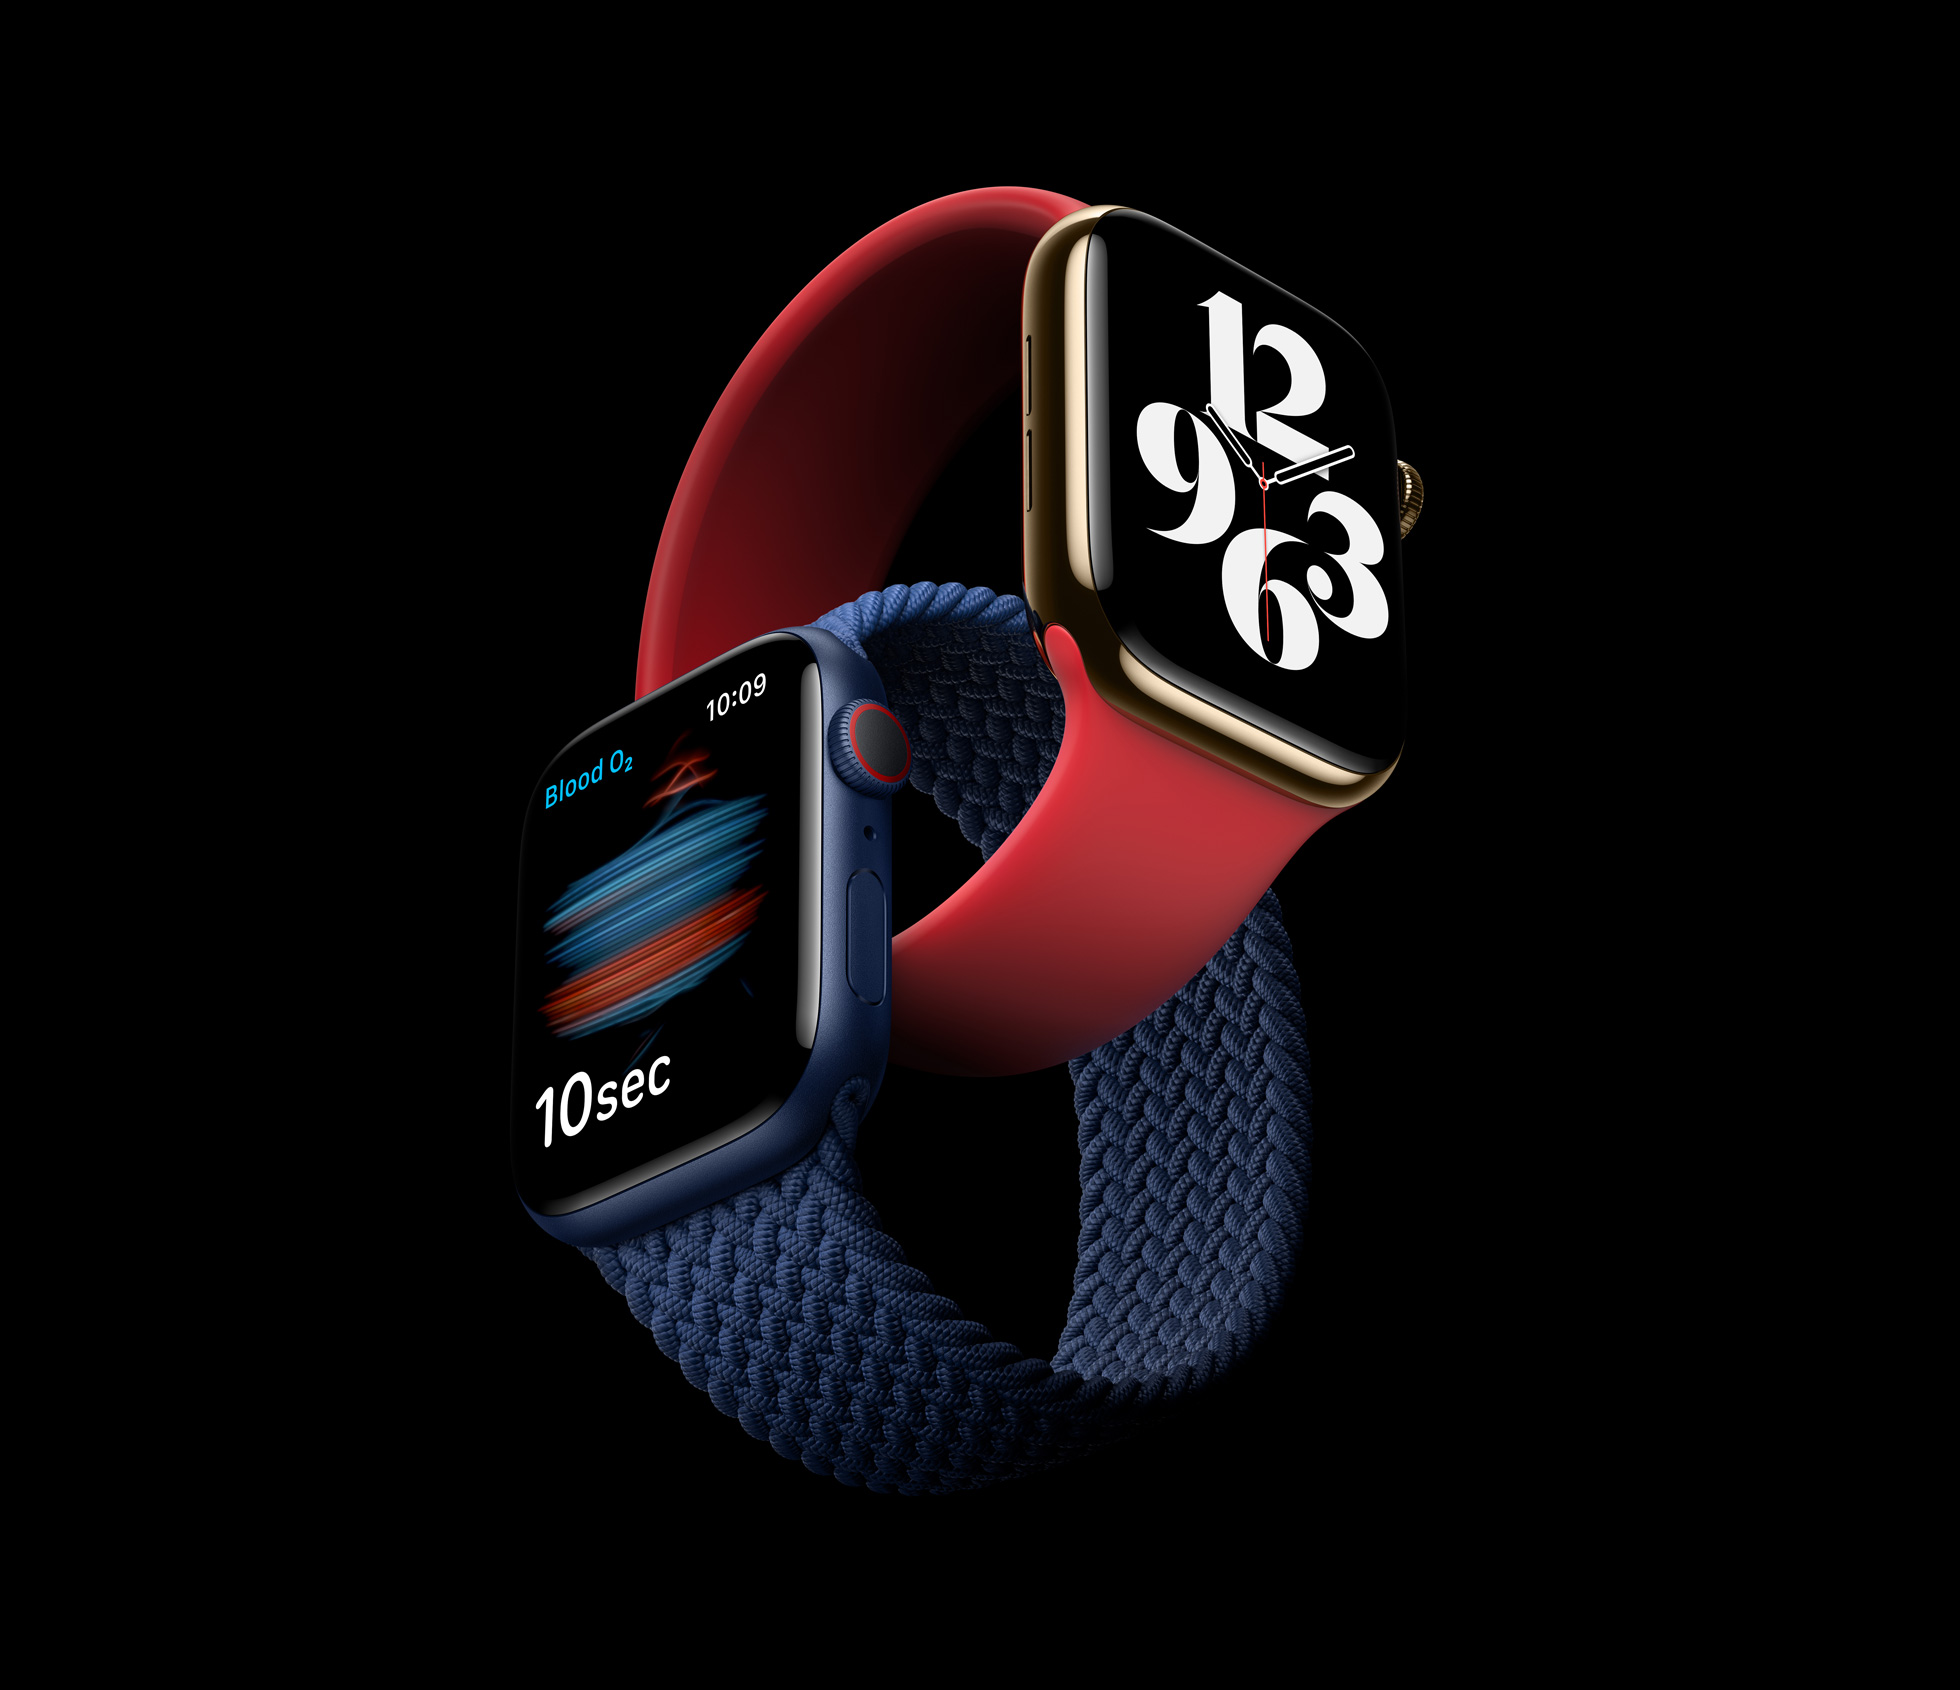 Apple_delivers-apple-watch-series-6_09152020.jpg